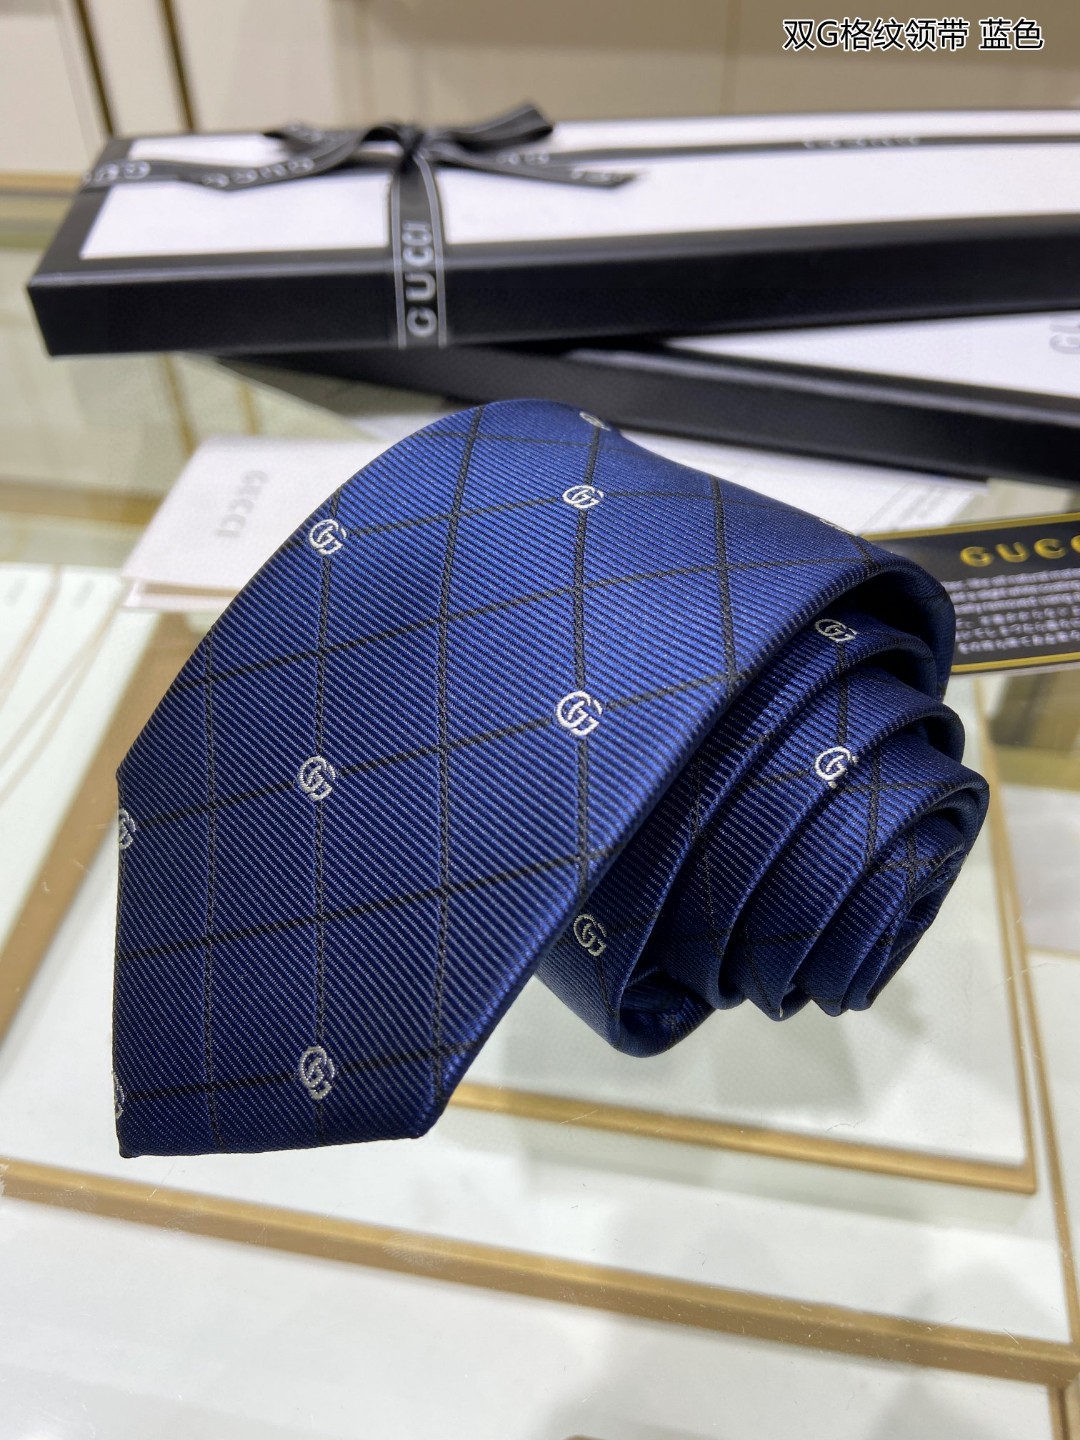 上新特价G家专柜新款男士领带双G格纹领带稀有采用经典小G搭配交叉线条格纹展现精湛手工与时尚优雅的理想选择